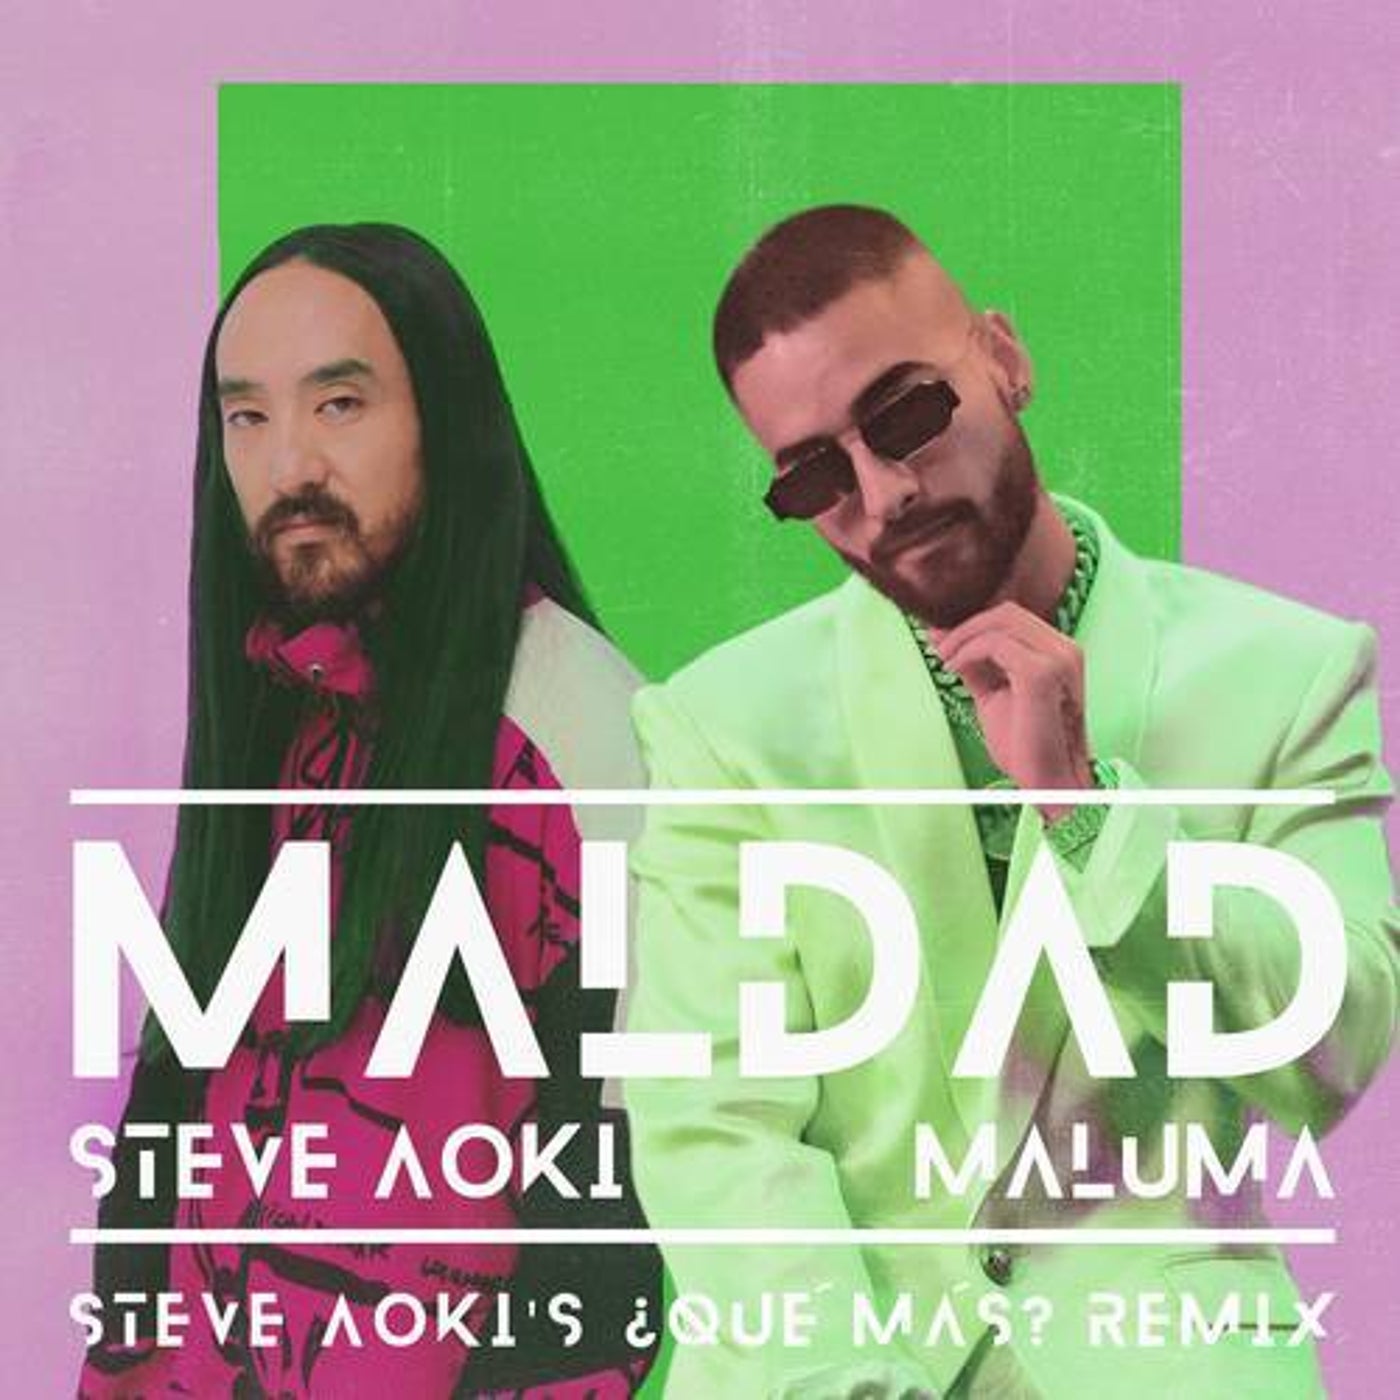 Maldad (Steve Aoki's ¿Qué Más? Remix)